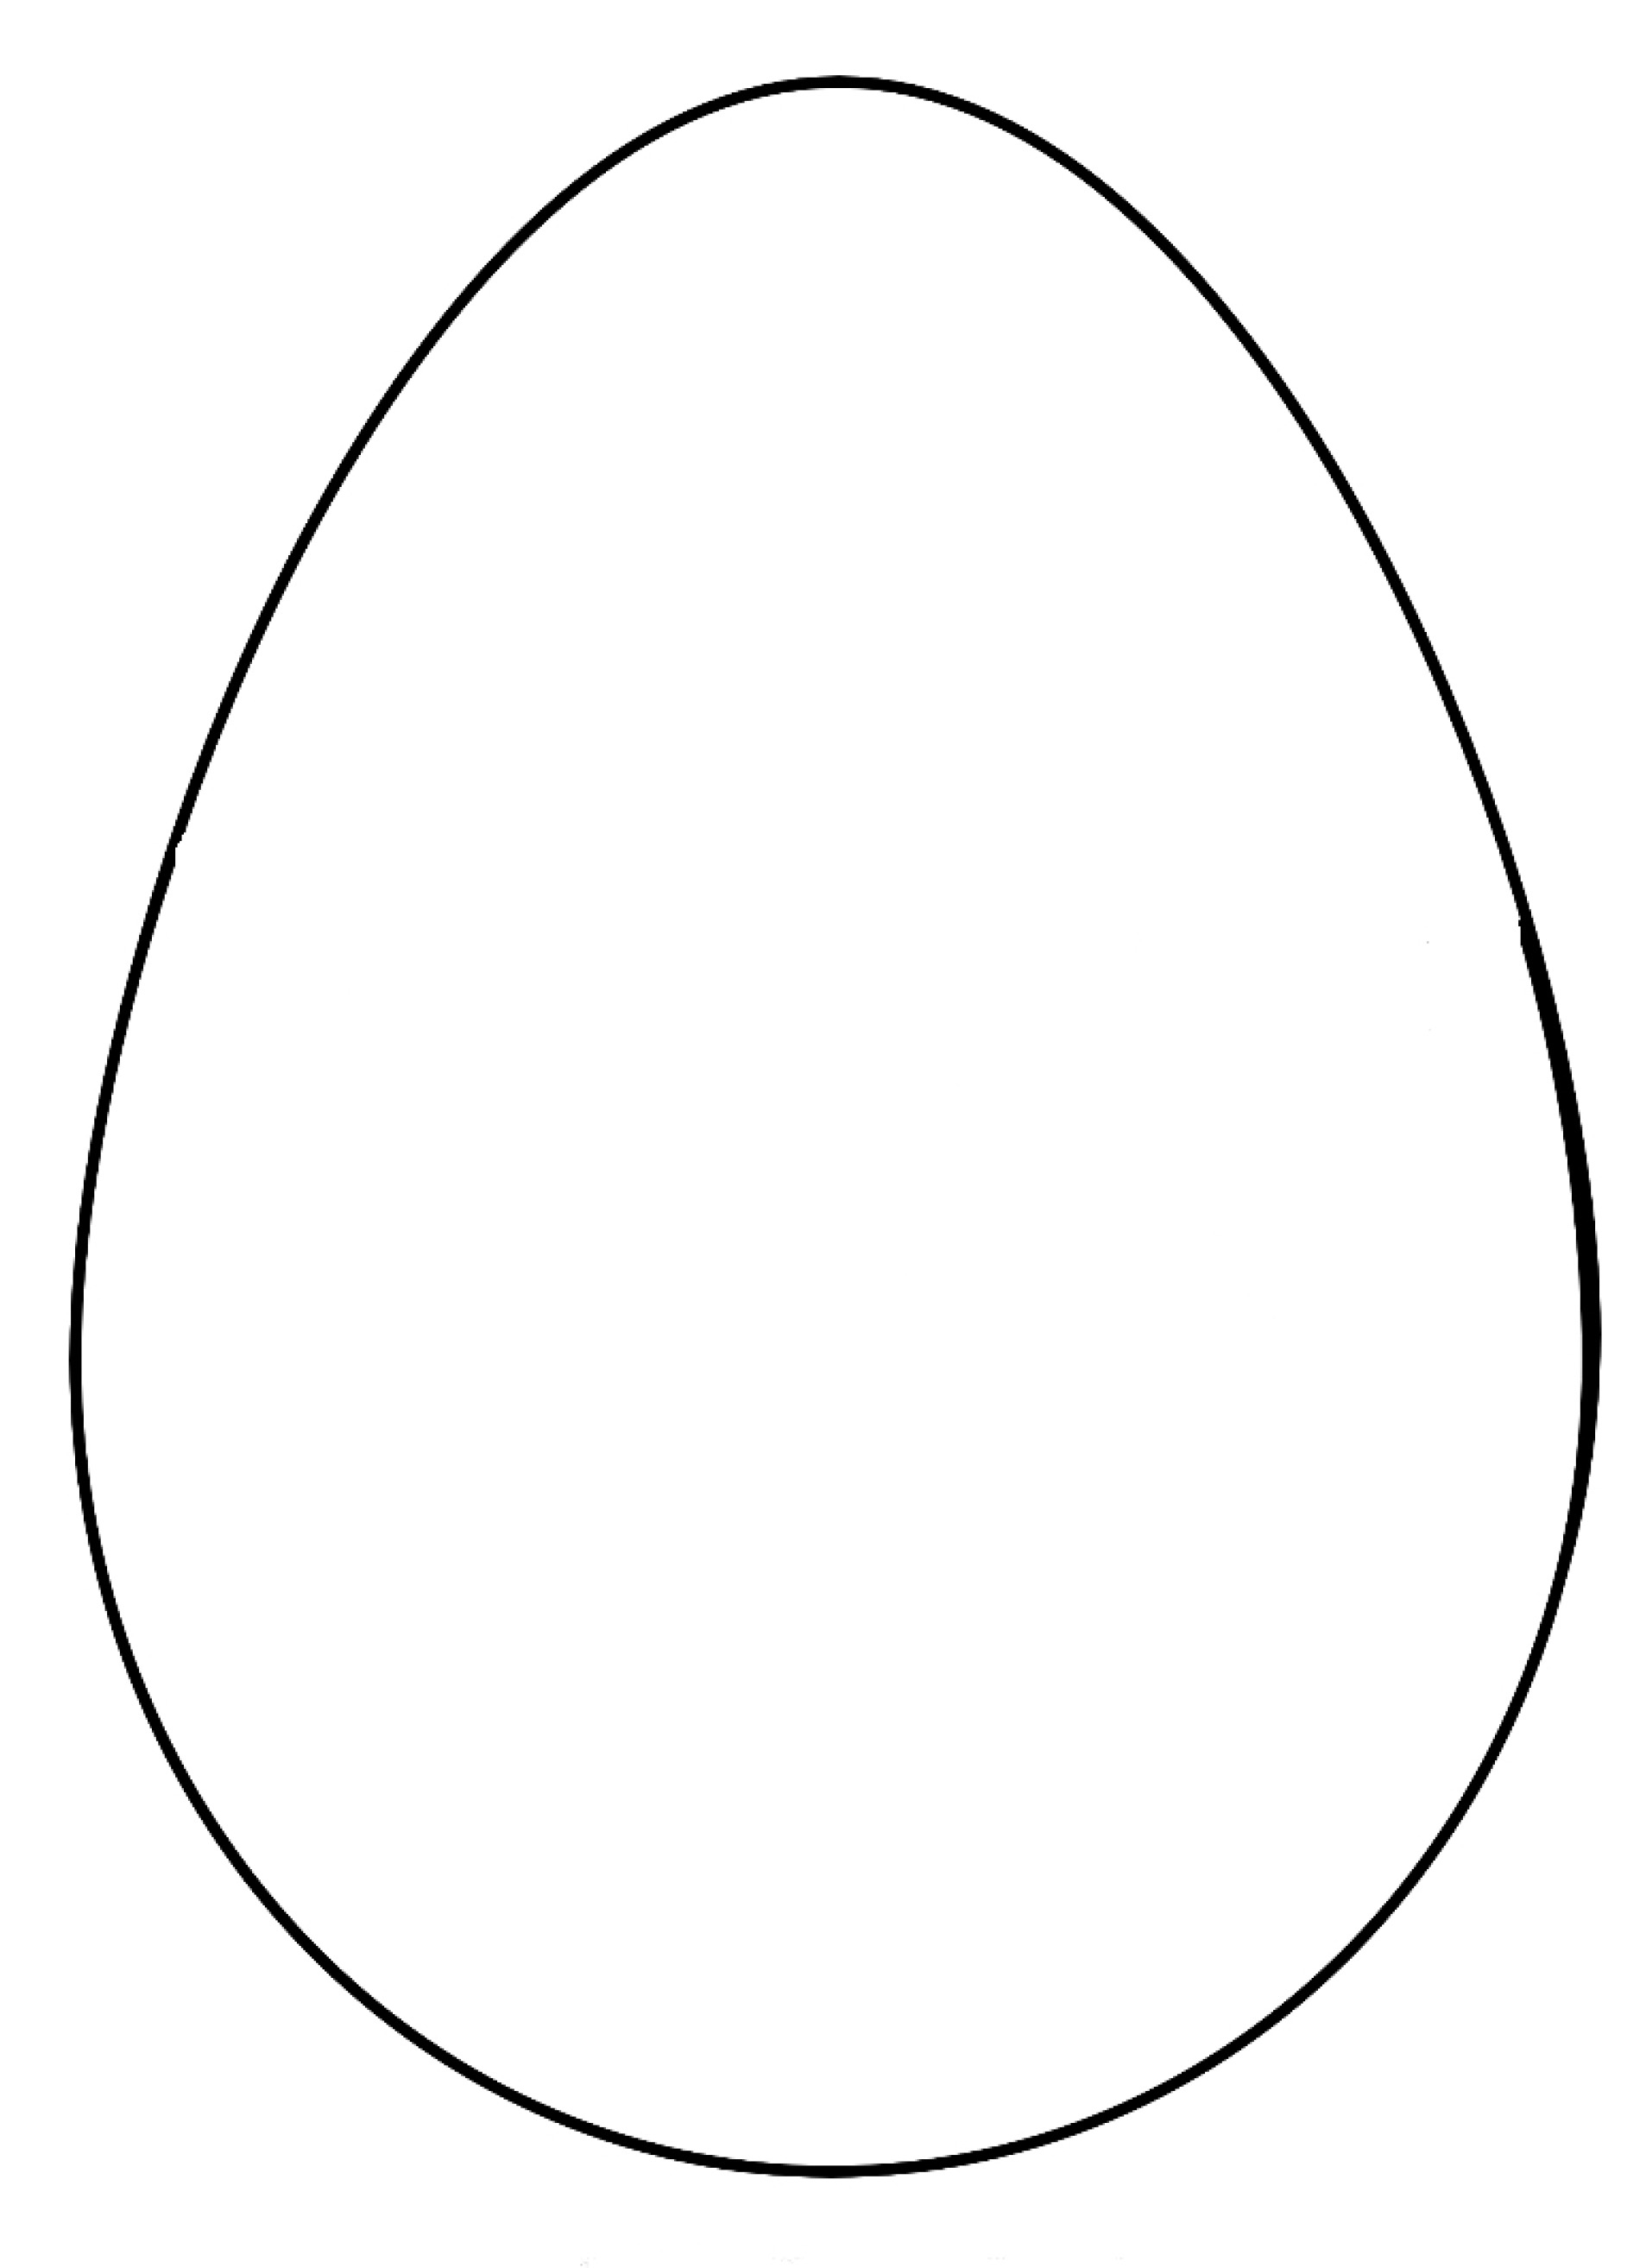 Яйцо шаблон для детей. Яйцо раскраска. Яйца шаблоны для раскрашивания. Яйцо трафарет. Шаблон пасхального яйца.